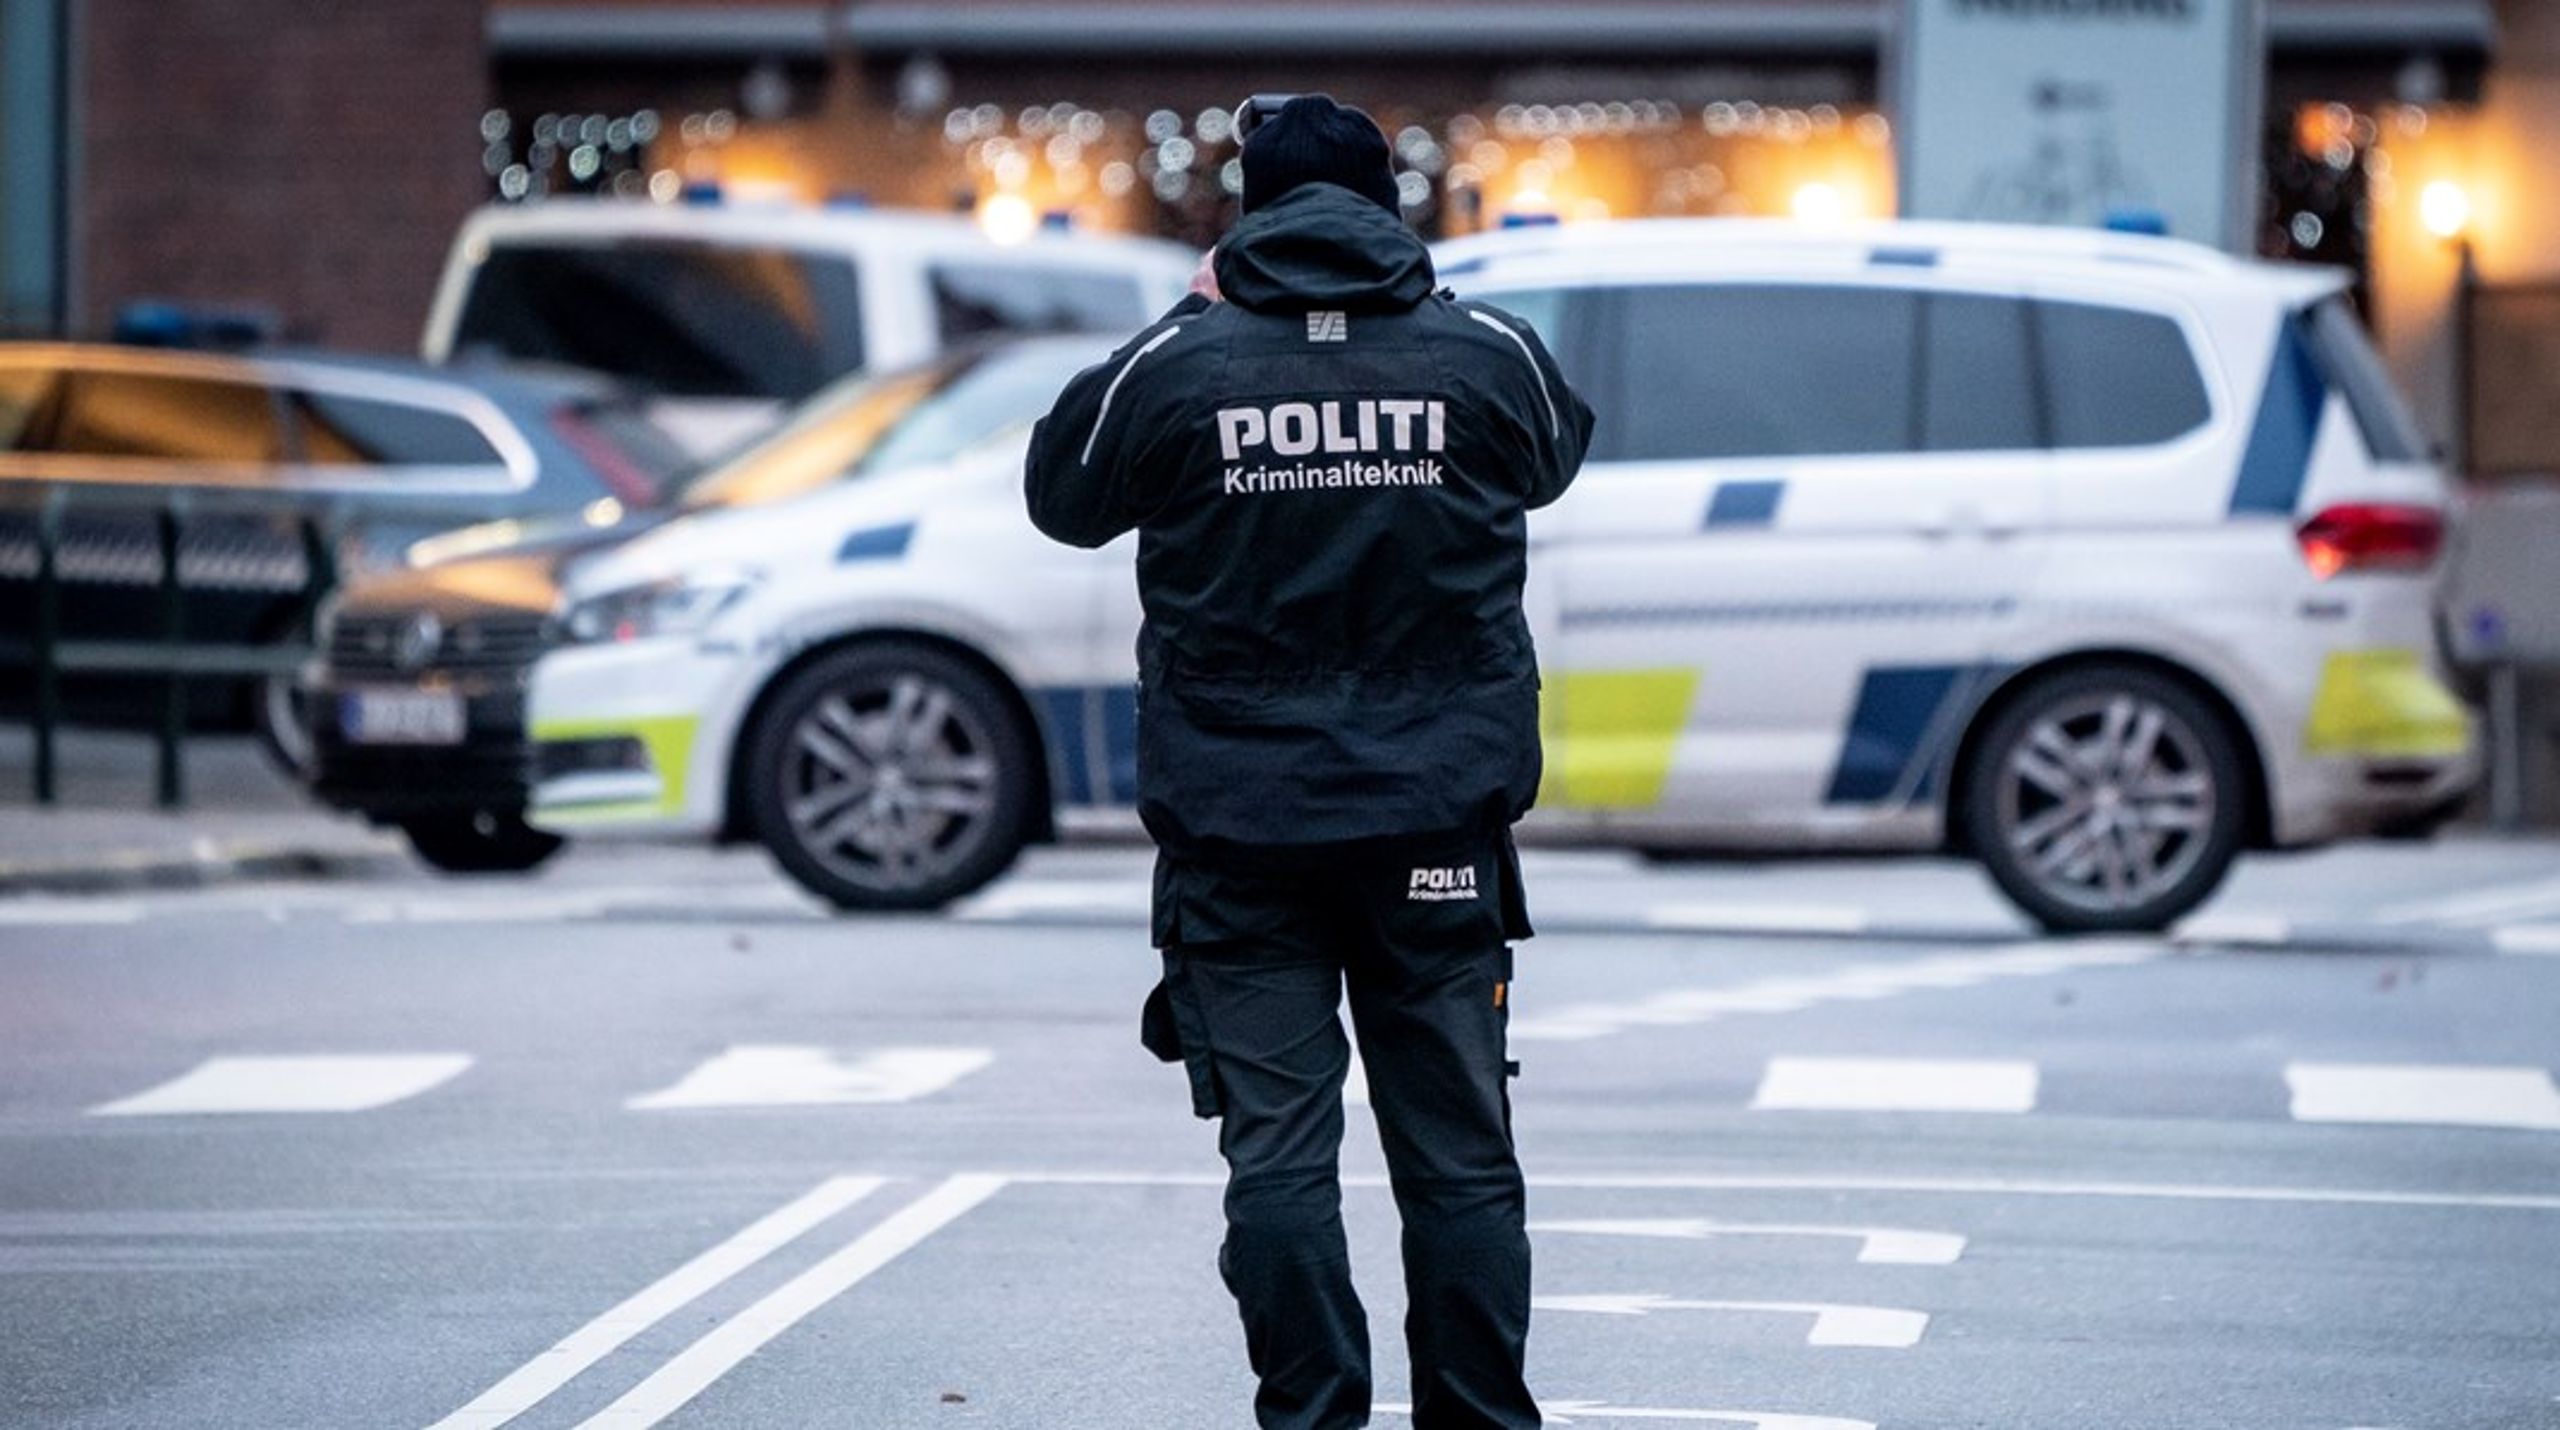 Jeg er vokset op med forældre, der bruger enhver lejlighed til at fortælle om, hvor ukorrupte, humane og fagligt dygtige dansk politi er. Jeg er stadig enig i det udsagn, skriver Özlem Cekic.